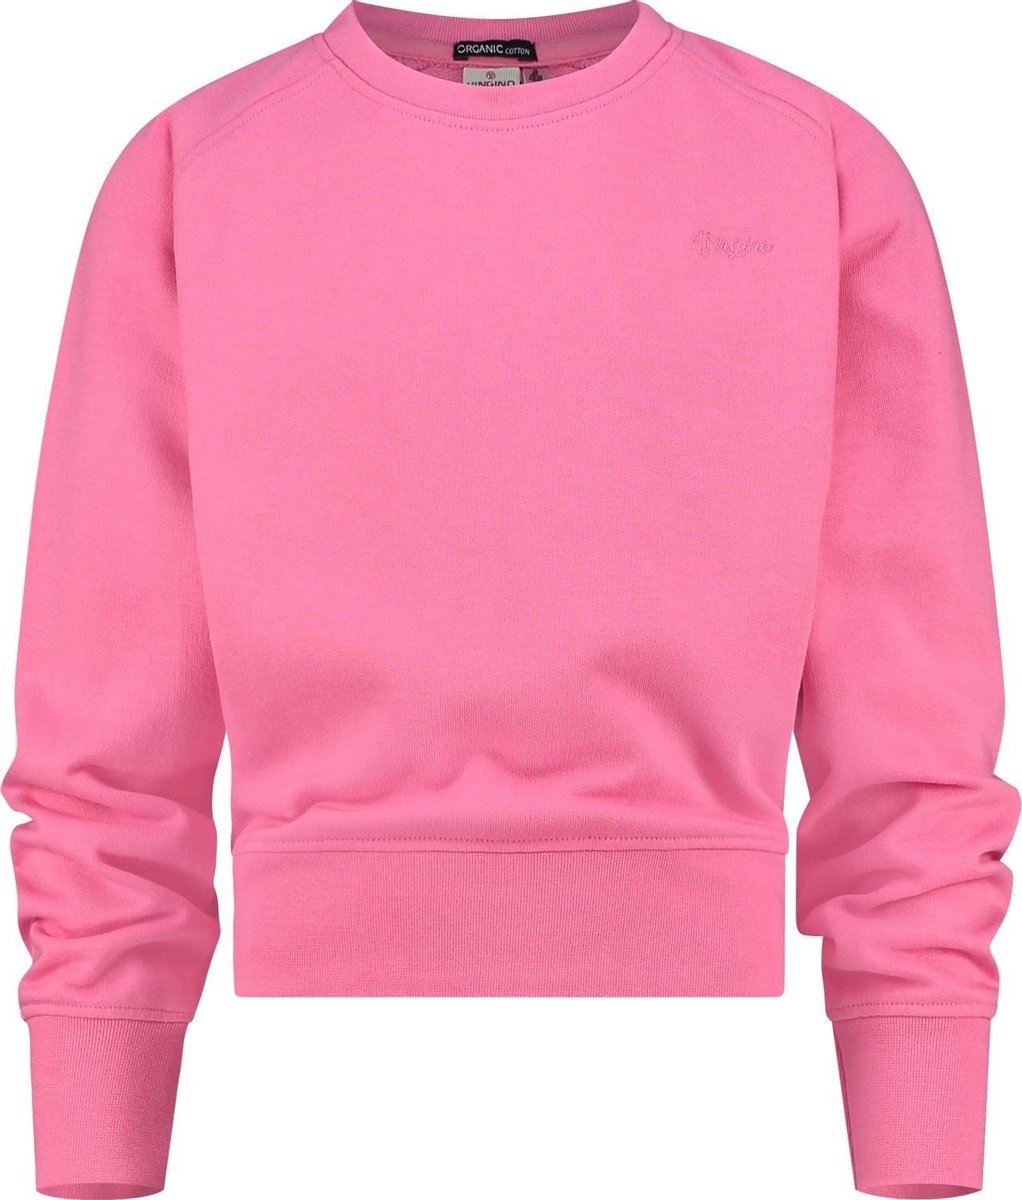 Vingino Sweater G-basic Meisjes Katoen Roze Maat 104